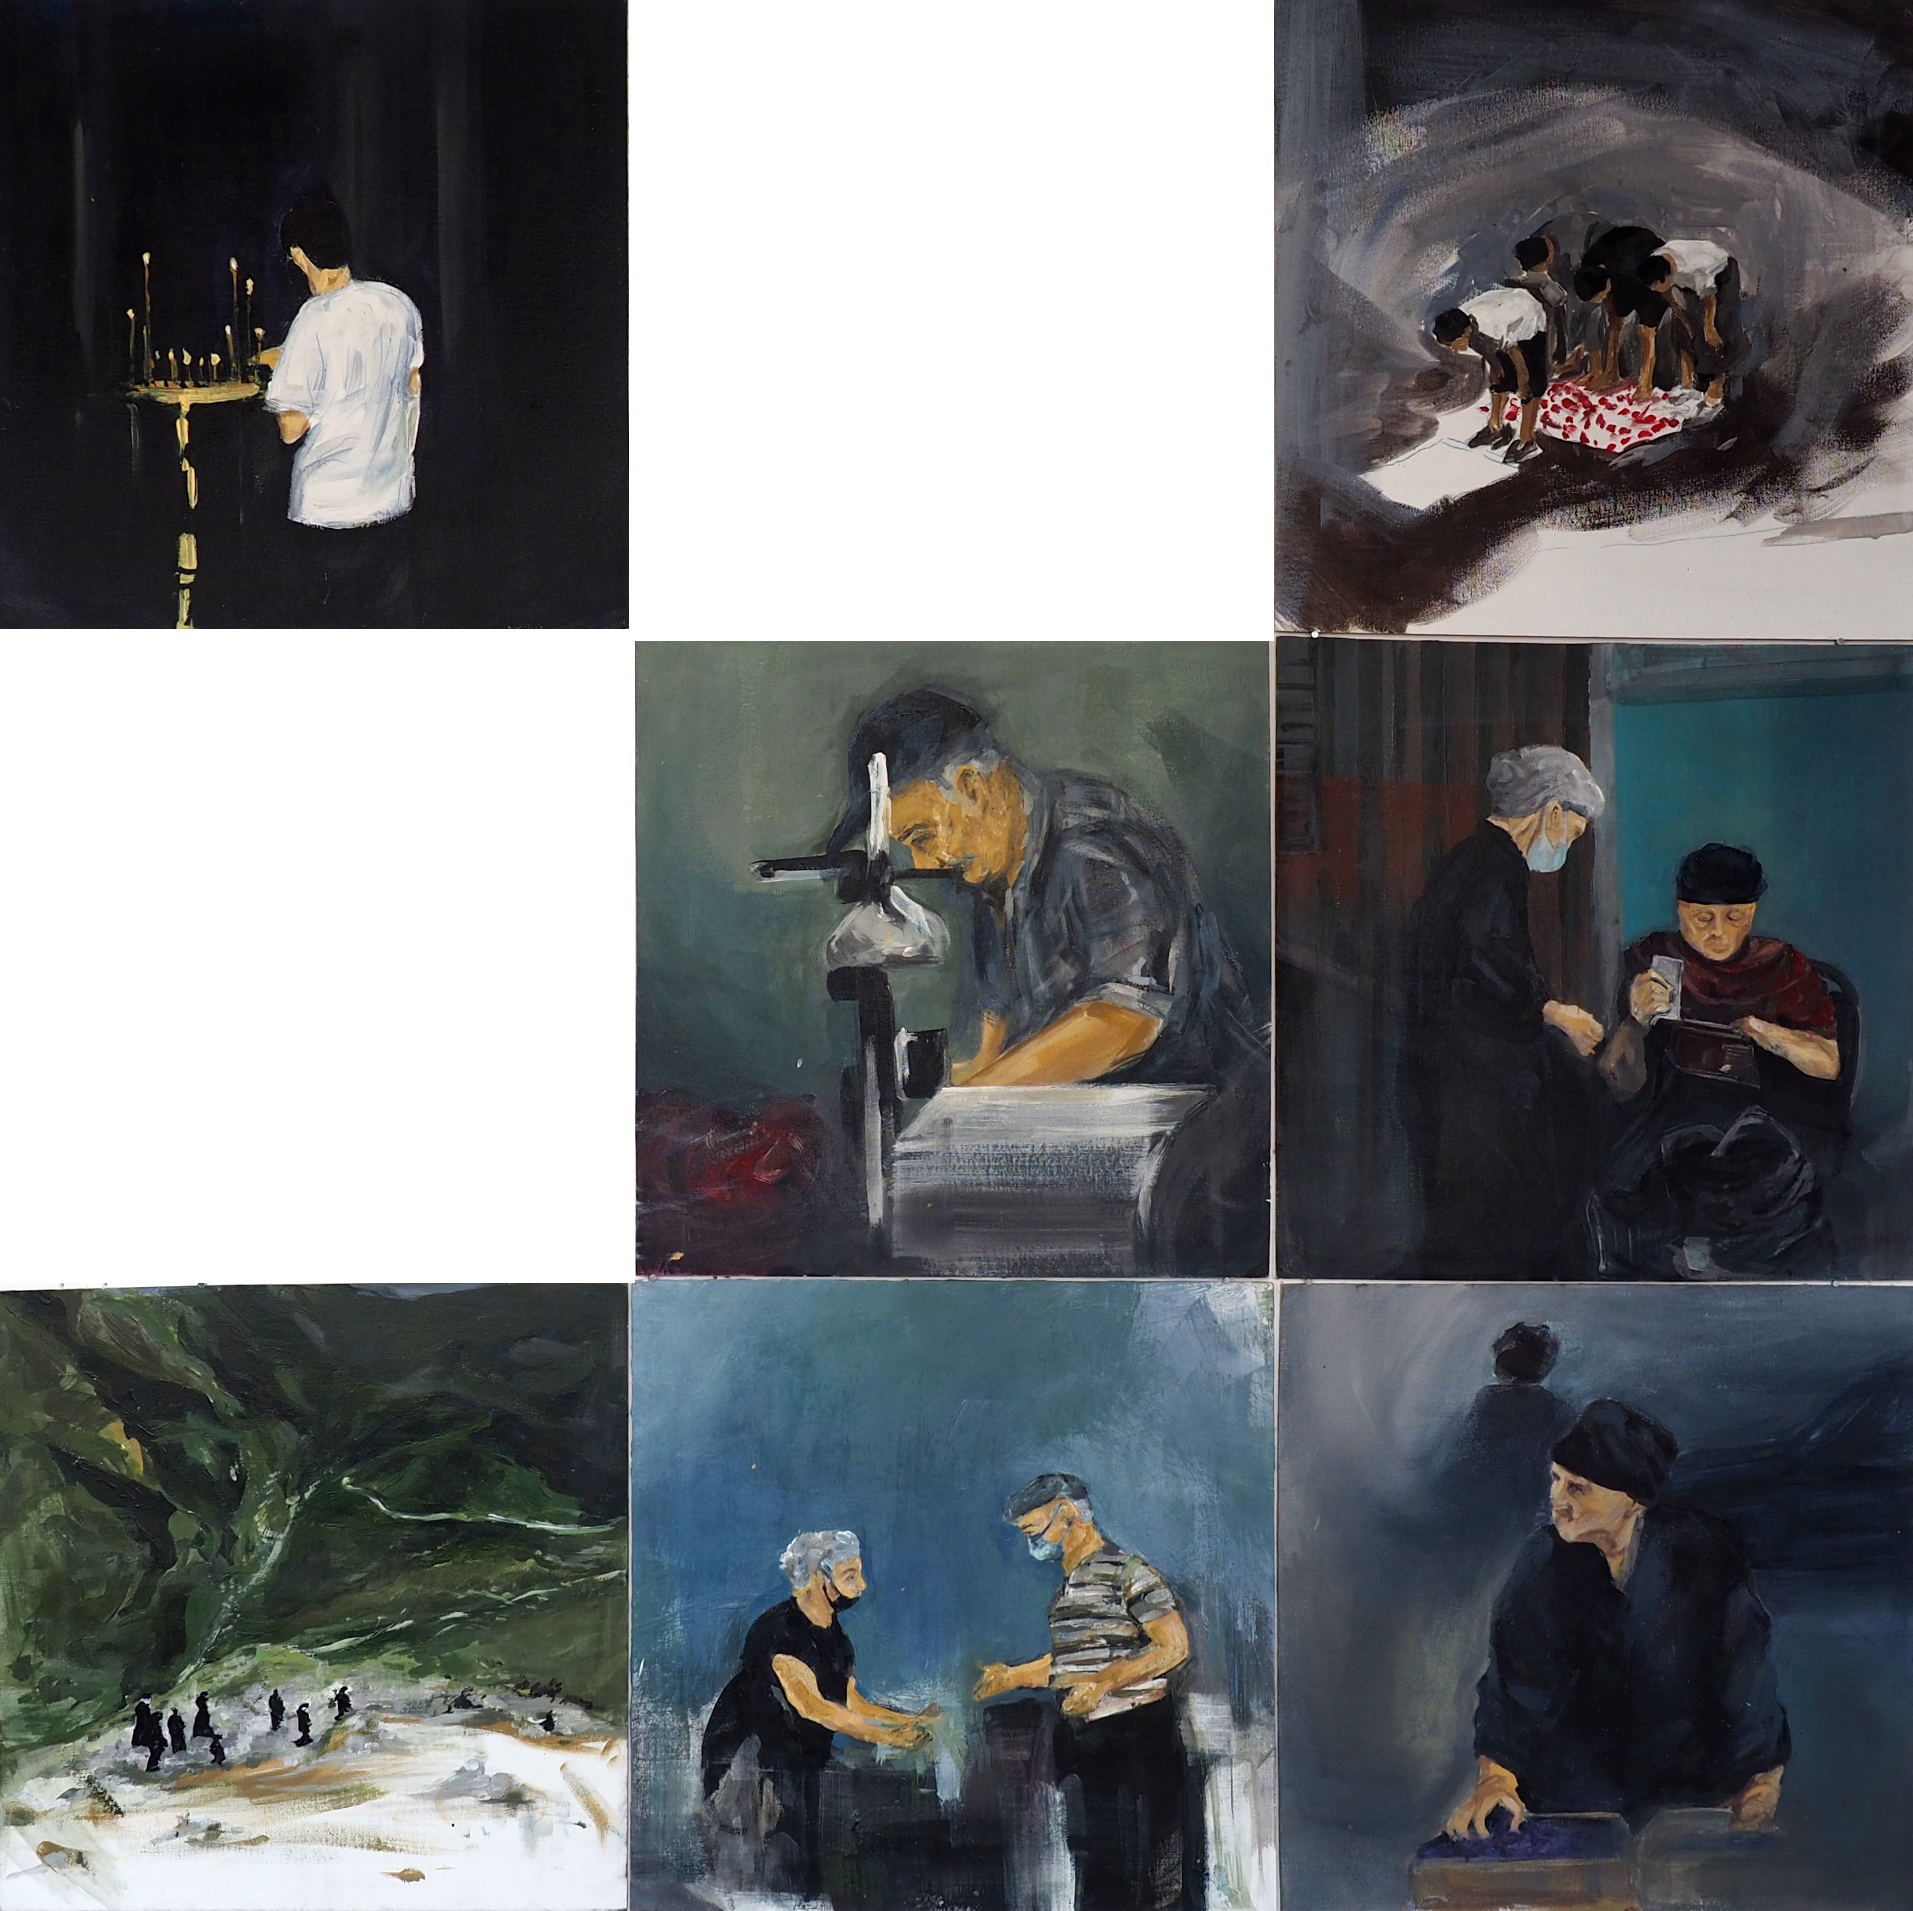 Siedem obrazów kwadratowych umieszczonych na siatce kwadratu. Każdy obraz przedstawia scenę rodzajową z Gruzji. Obrazy są wykonane w chłodnych barwach. Przeważają barwy niebieskie i szare. Trzy obrazy przedstawiają portrety indywidualne.